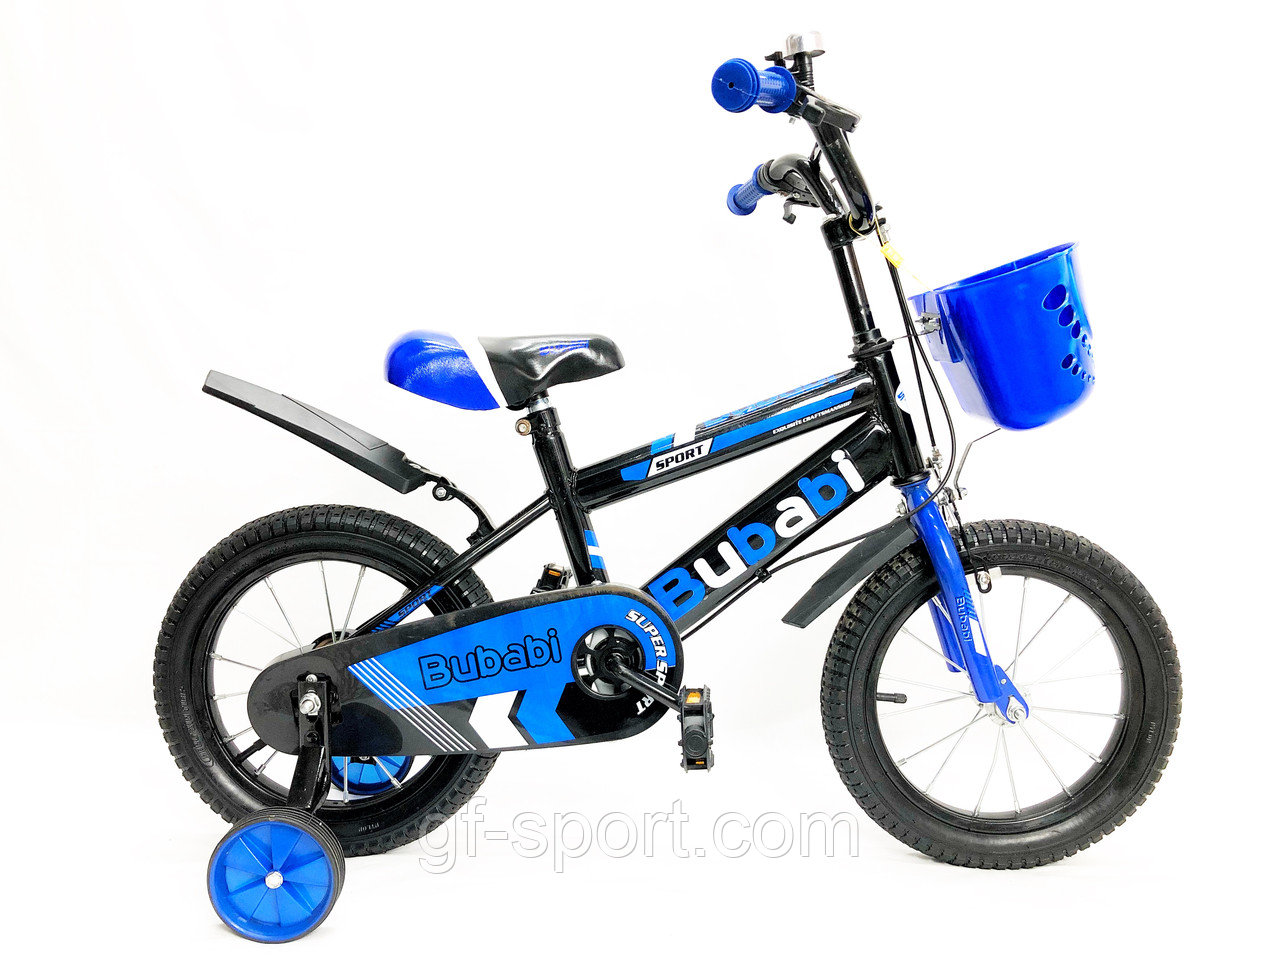 Велосипед Bubabi синий оригинал детский с холостым ходом 14 размер (500-14)